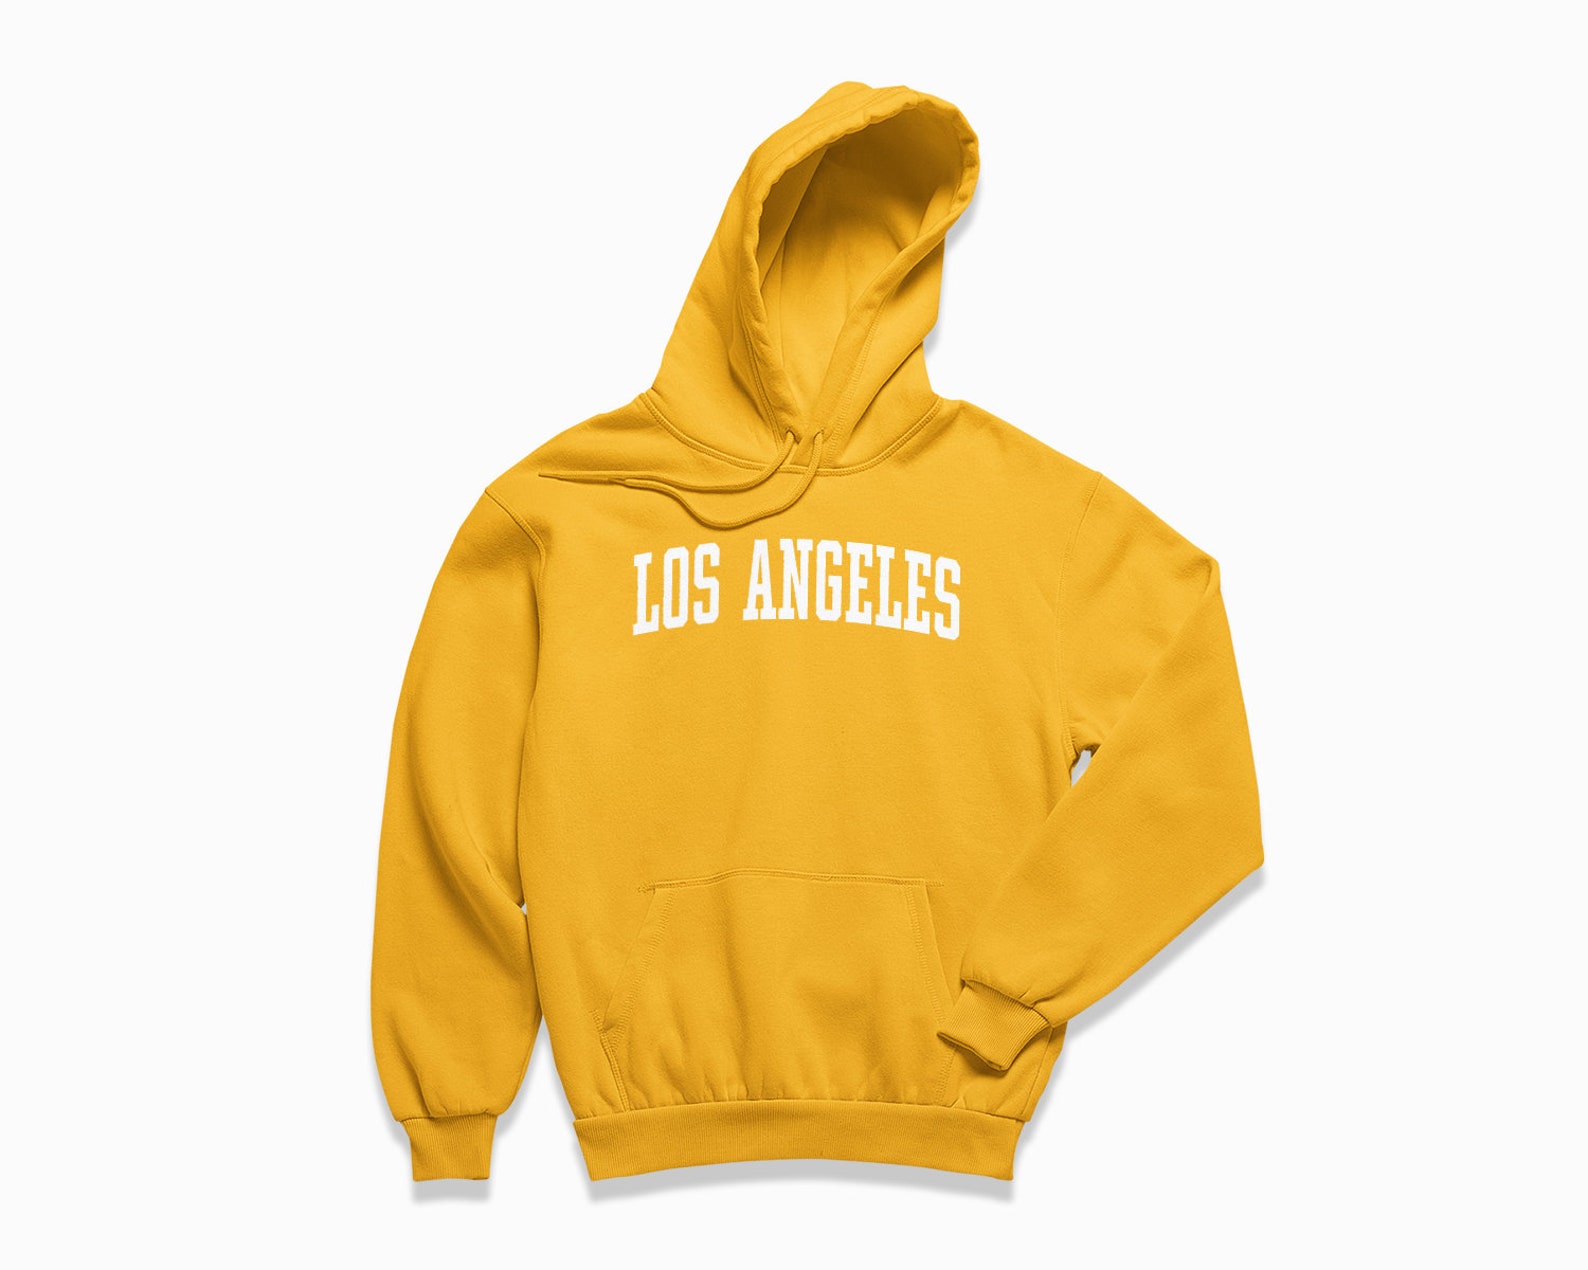 Los Angeles Hoodie: LA Hooded Sweatshirt / College Style - Etsy UK